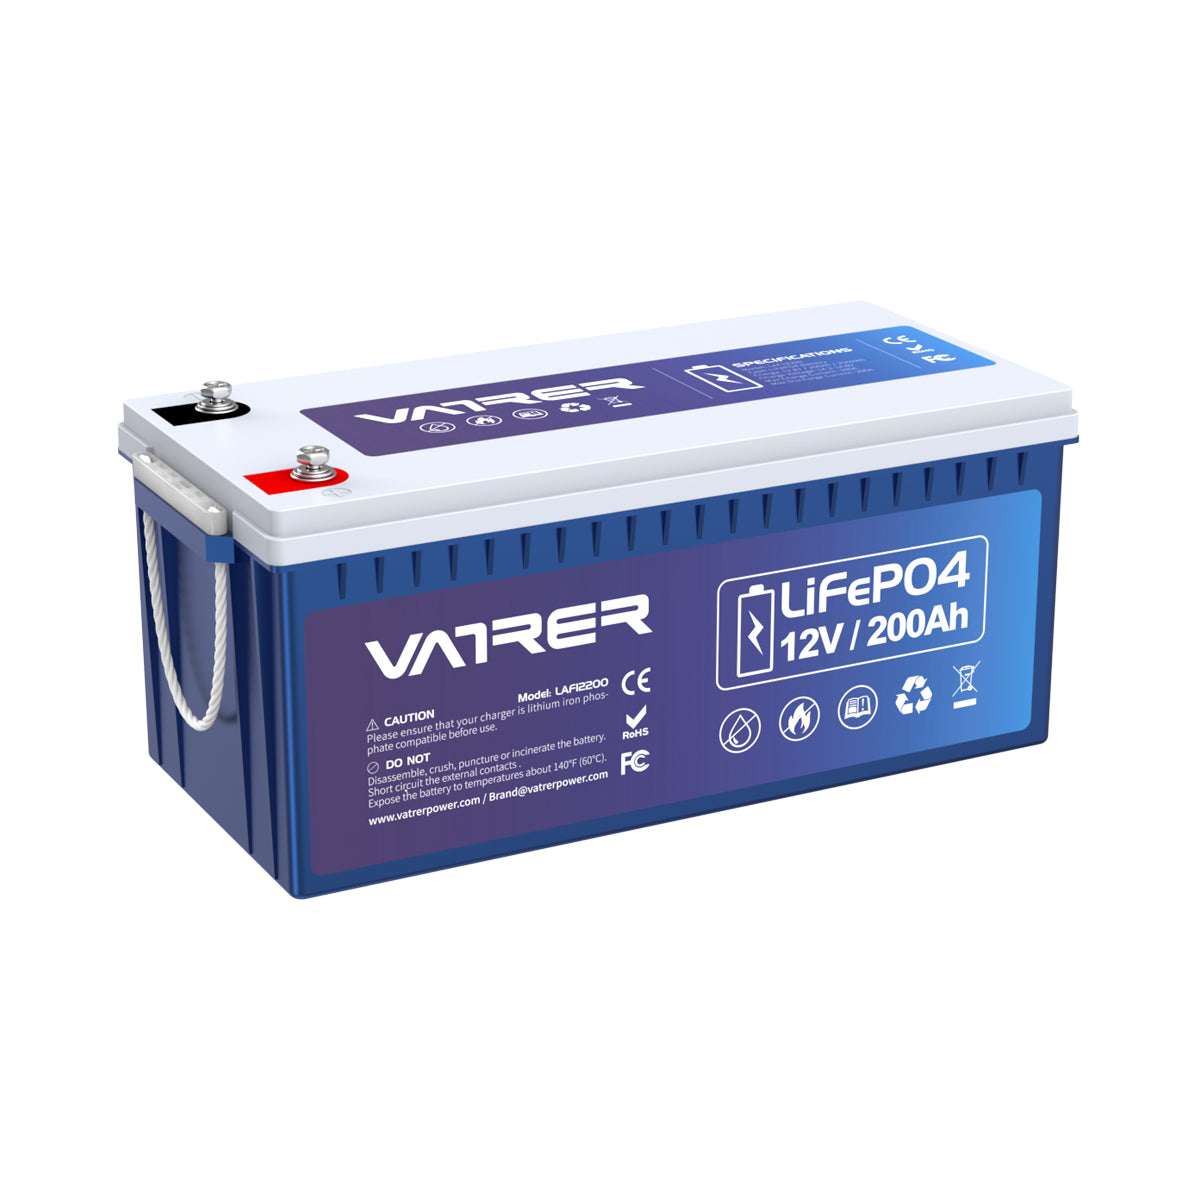 <tc>Vatrer</tc> 12 V 200 Ah Plus-Lithiumbatterie, integriertes 200 A BMS und LiFePO4-Batterien mit Niedertemperaturabschaltung